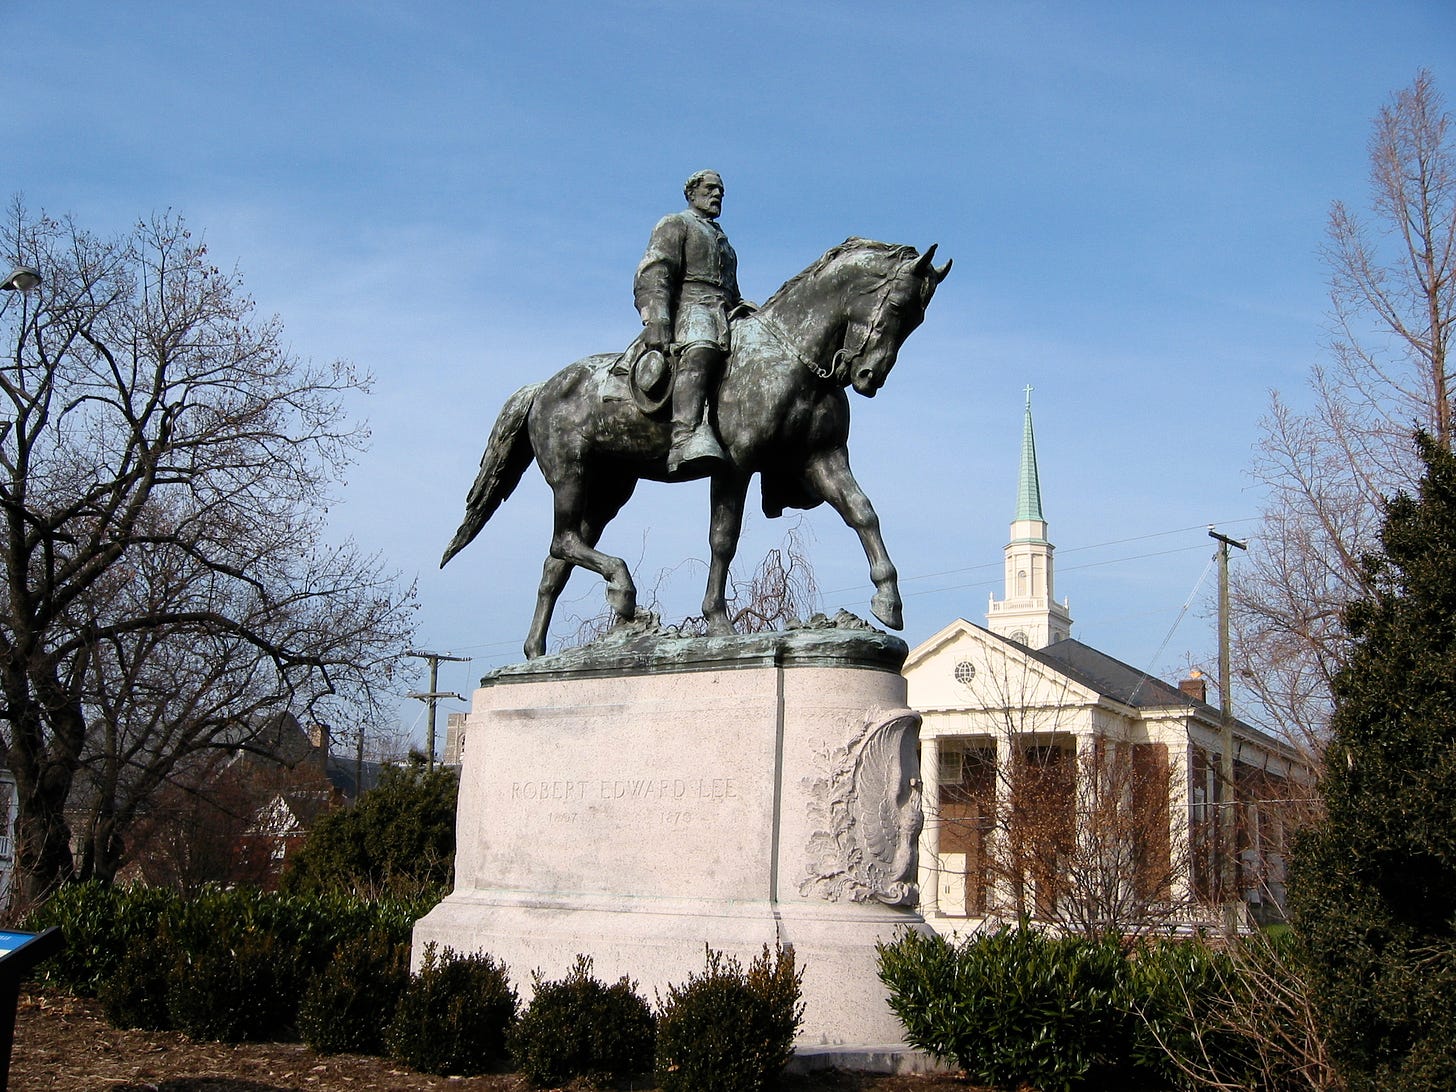 Robert E. Lee Monument (Charlottesville, Virginia) - Wikipedia